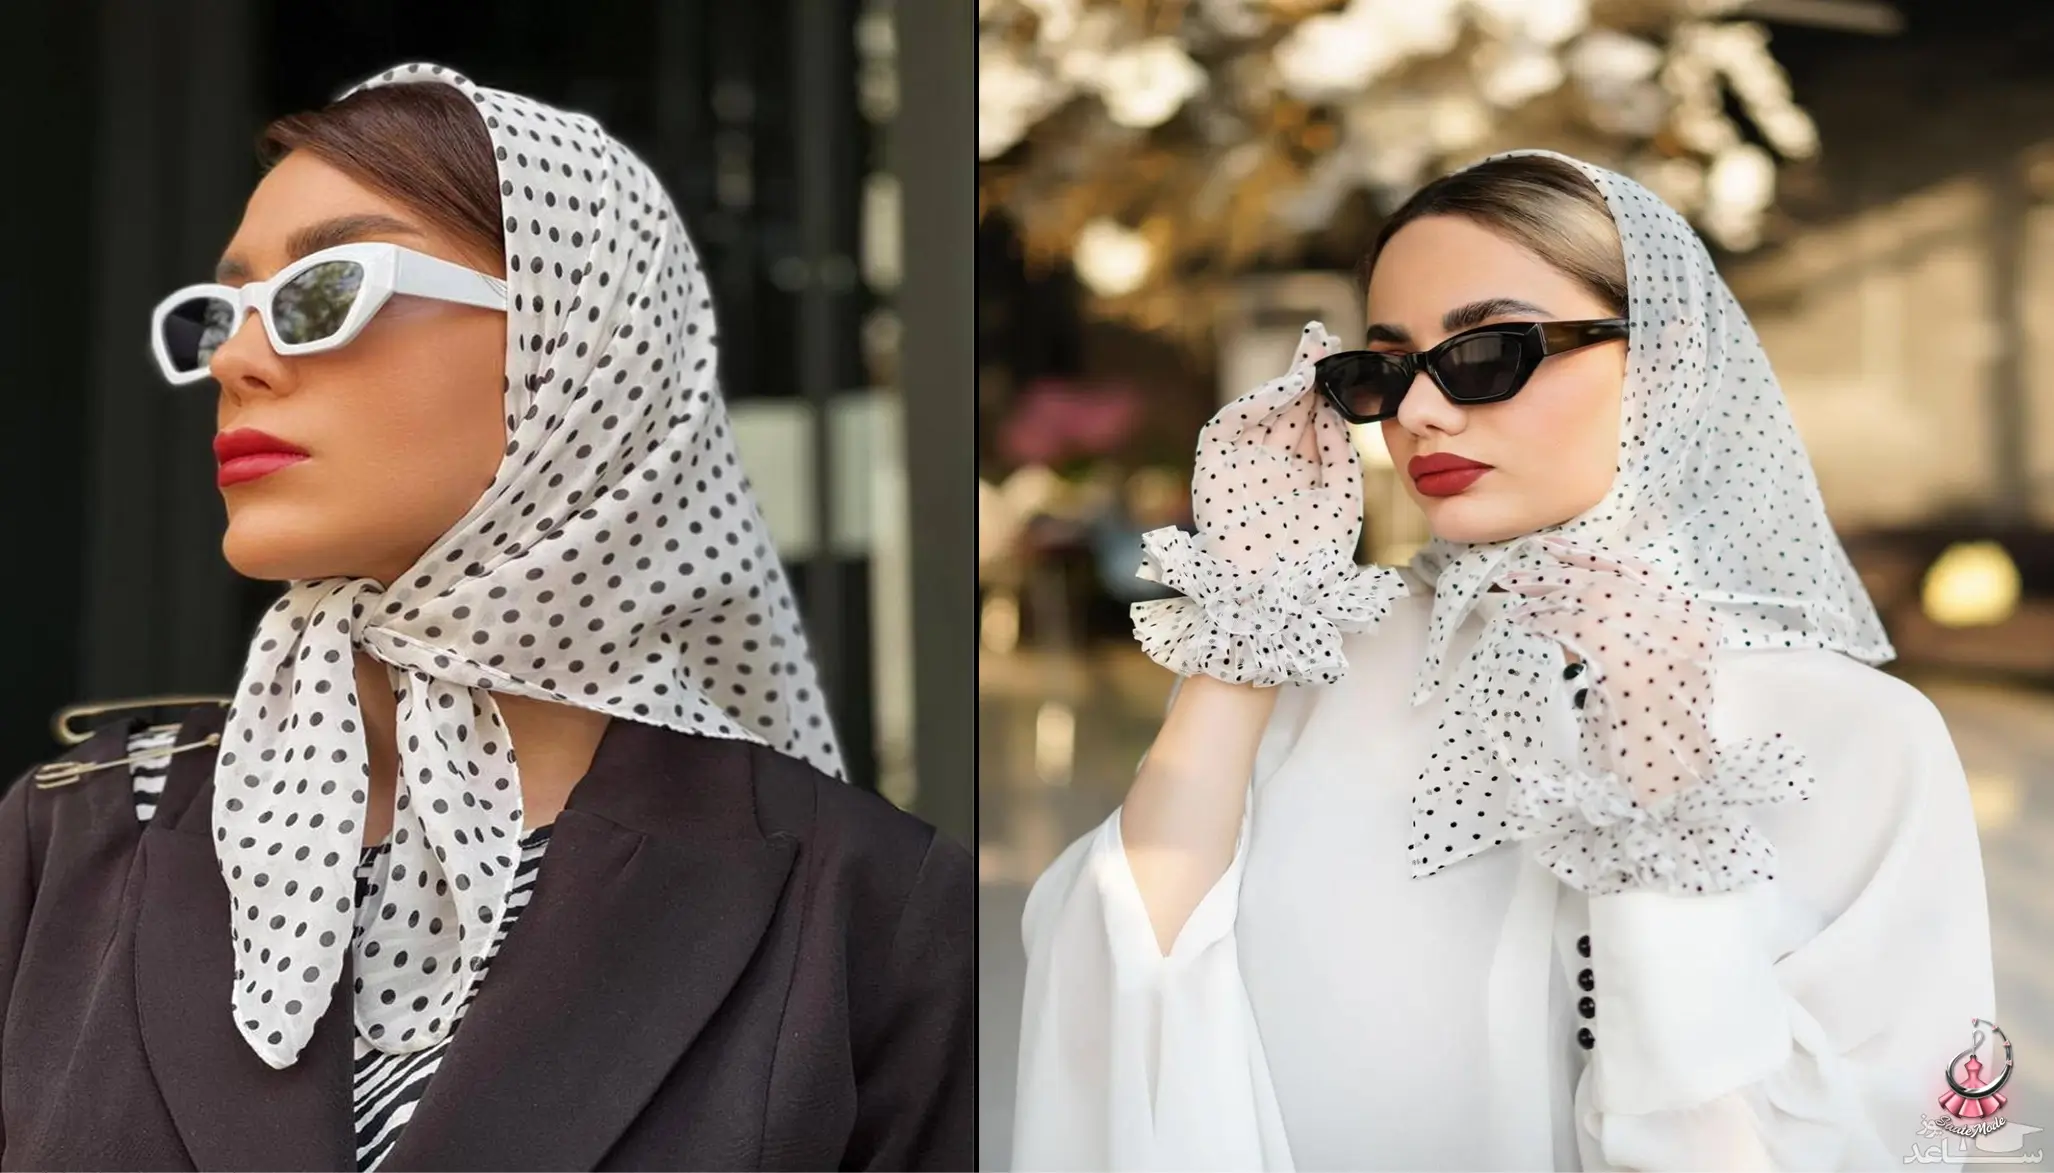 تفاوت باندانا، روسری و مینی اسکارف چیست؟
